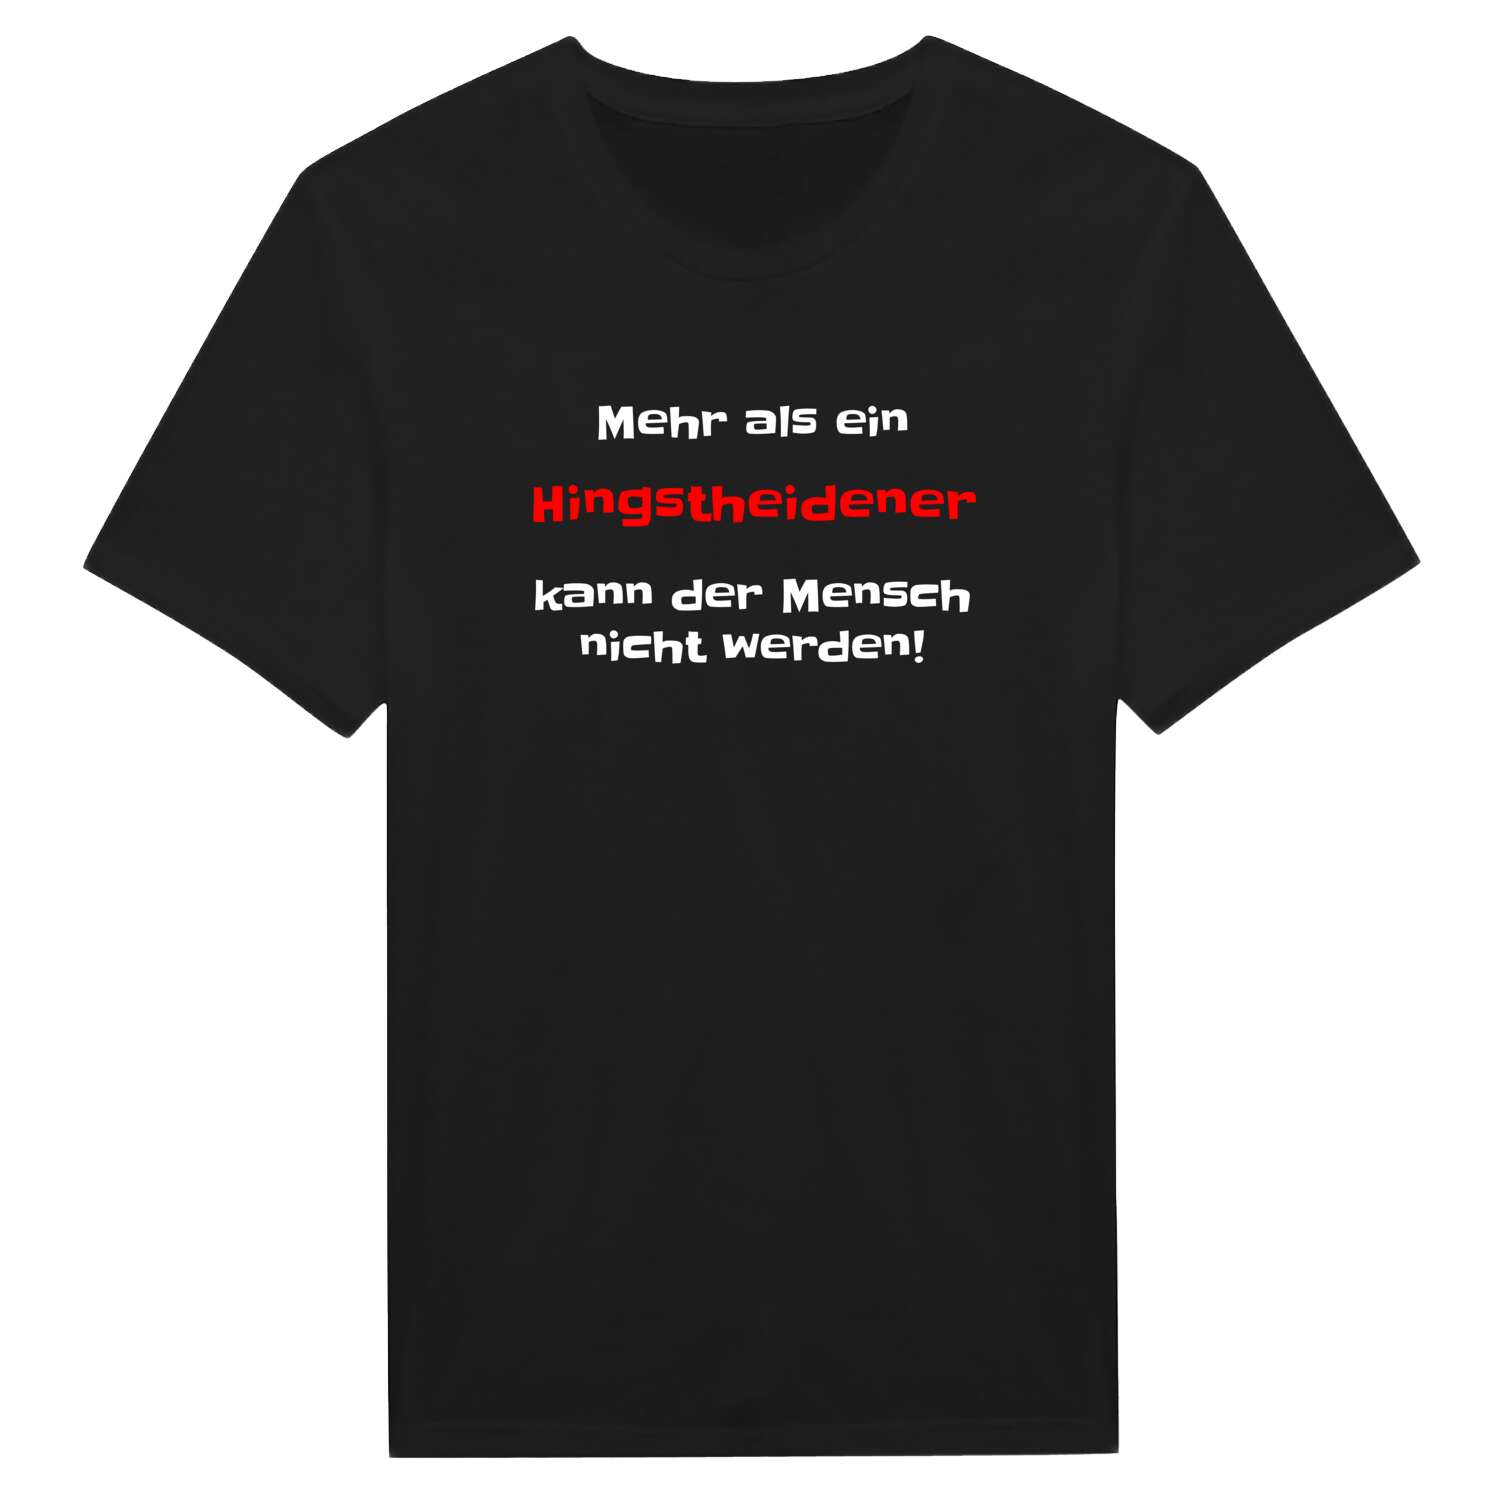 Hingstheide T-Shirt »Mehr als ein«